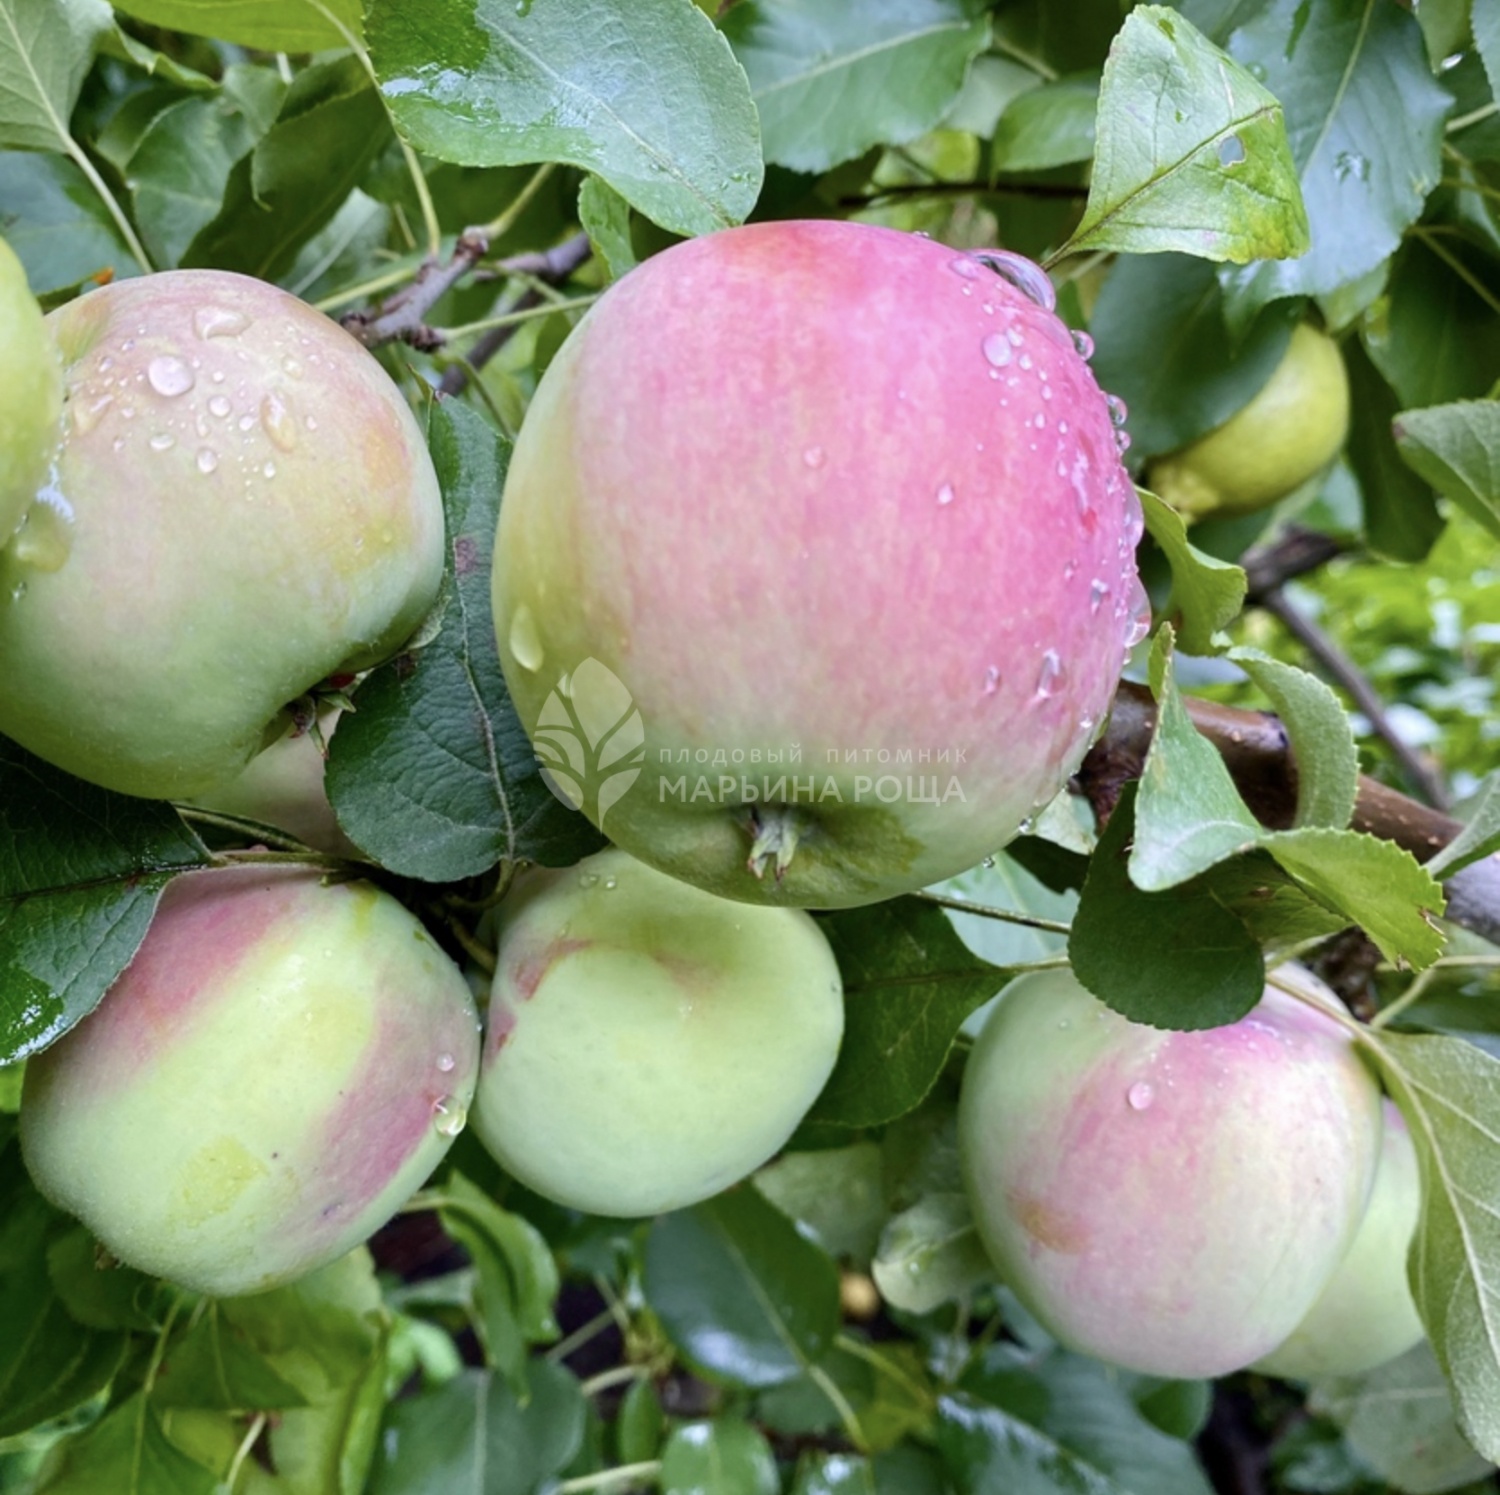 Яблоня сорта Настенька - купить саженцы в Перми в питомнике «Марьина роща»